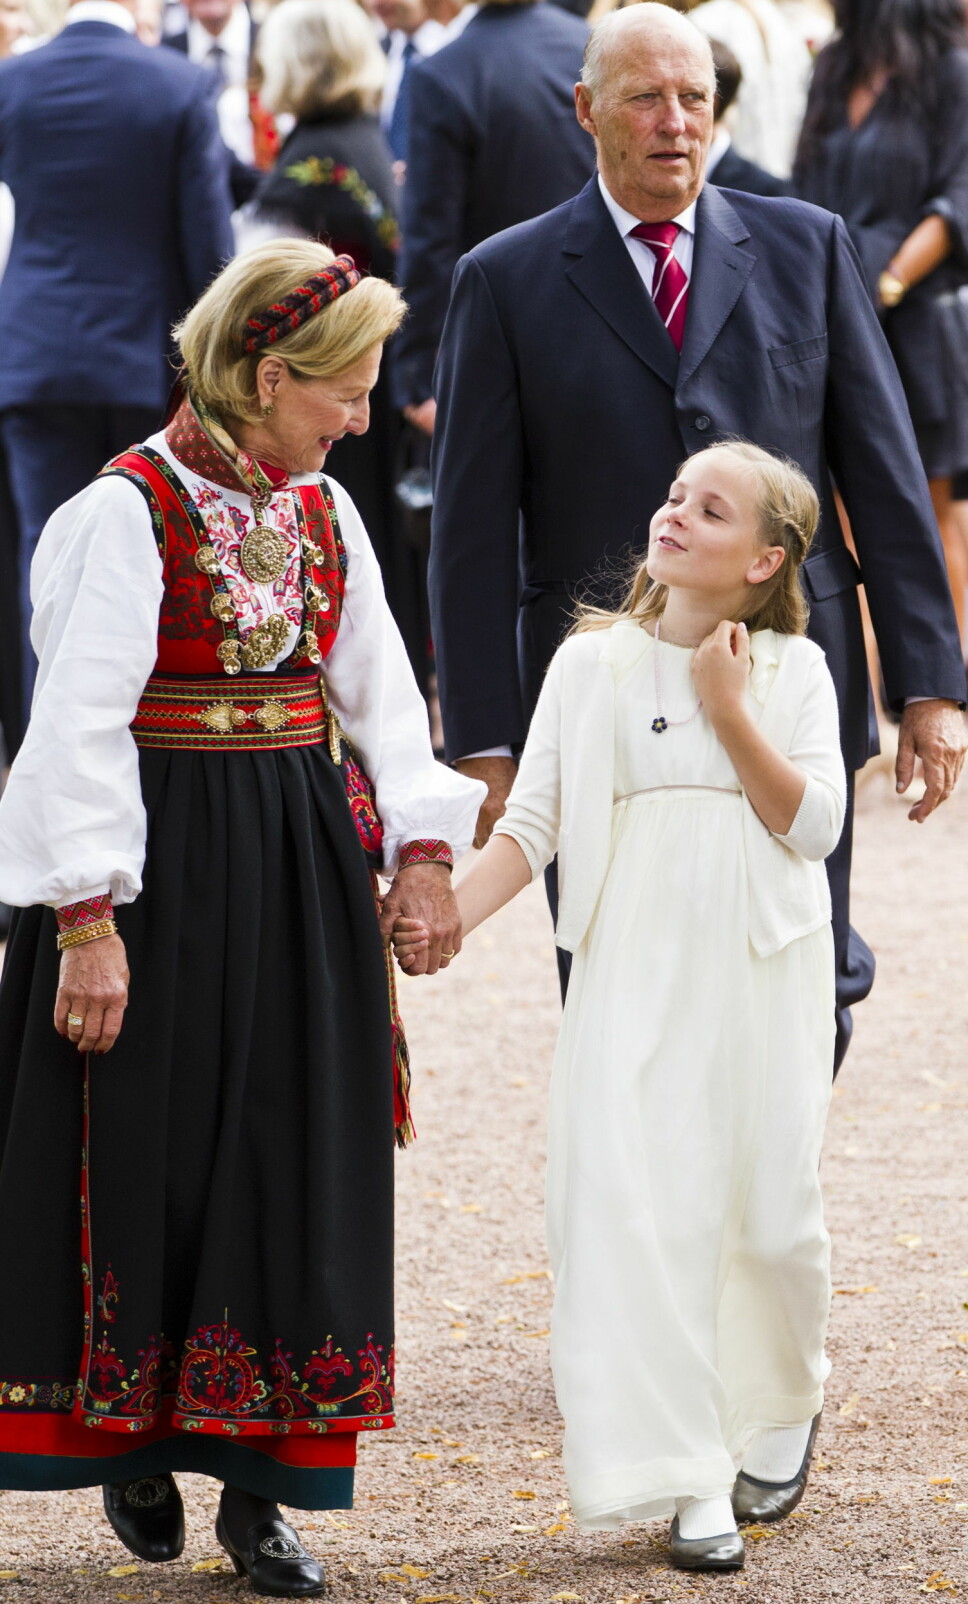 RØDTRØYA: Prinsesse Ingrid Alexandra (t.h.) og dronning Sonja på vei ut fra Marius Borg Høibys konfirmasjon i 2012. Dronningen er iført Rødtrøye-bunaden.